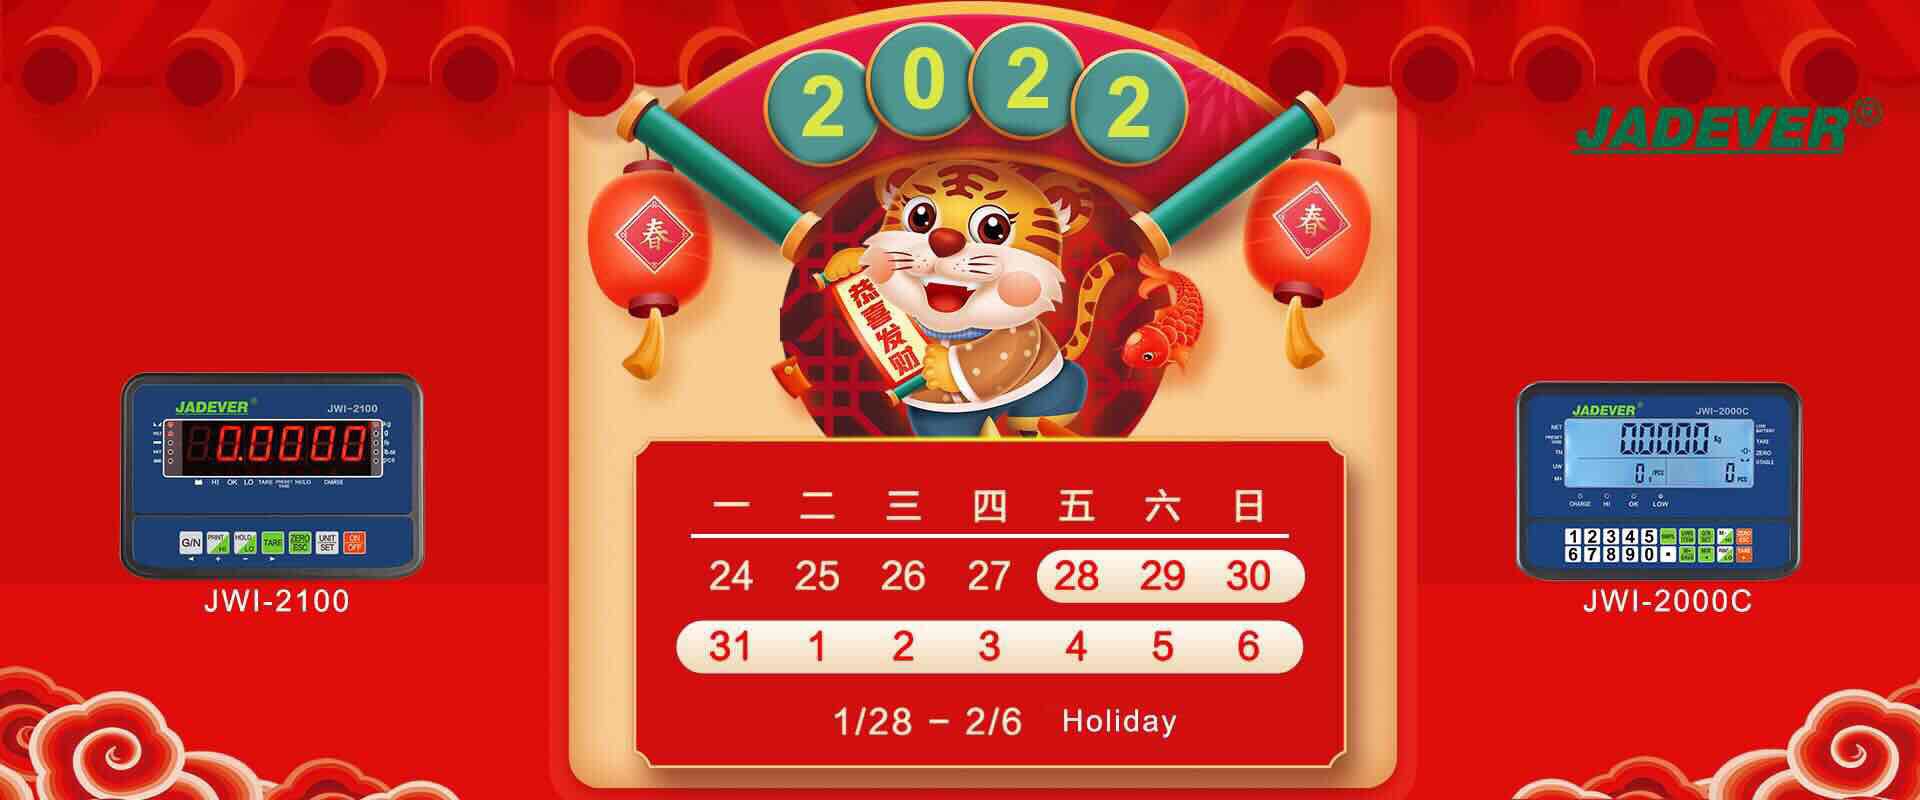 avis de vacances - nouvel an lunaire chinois 2022